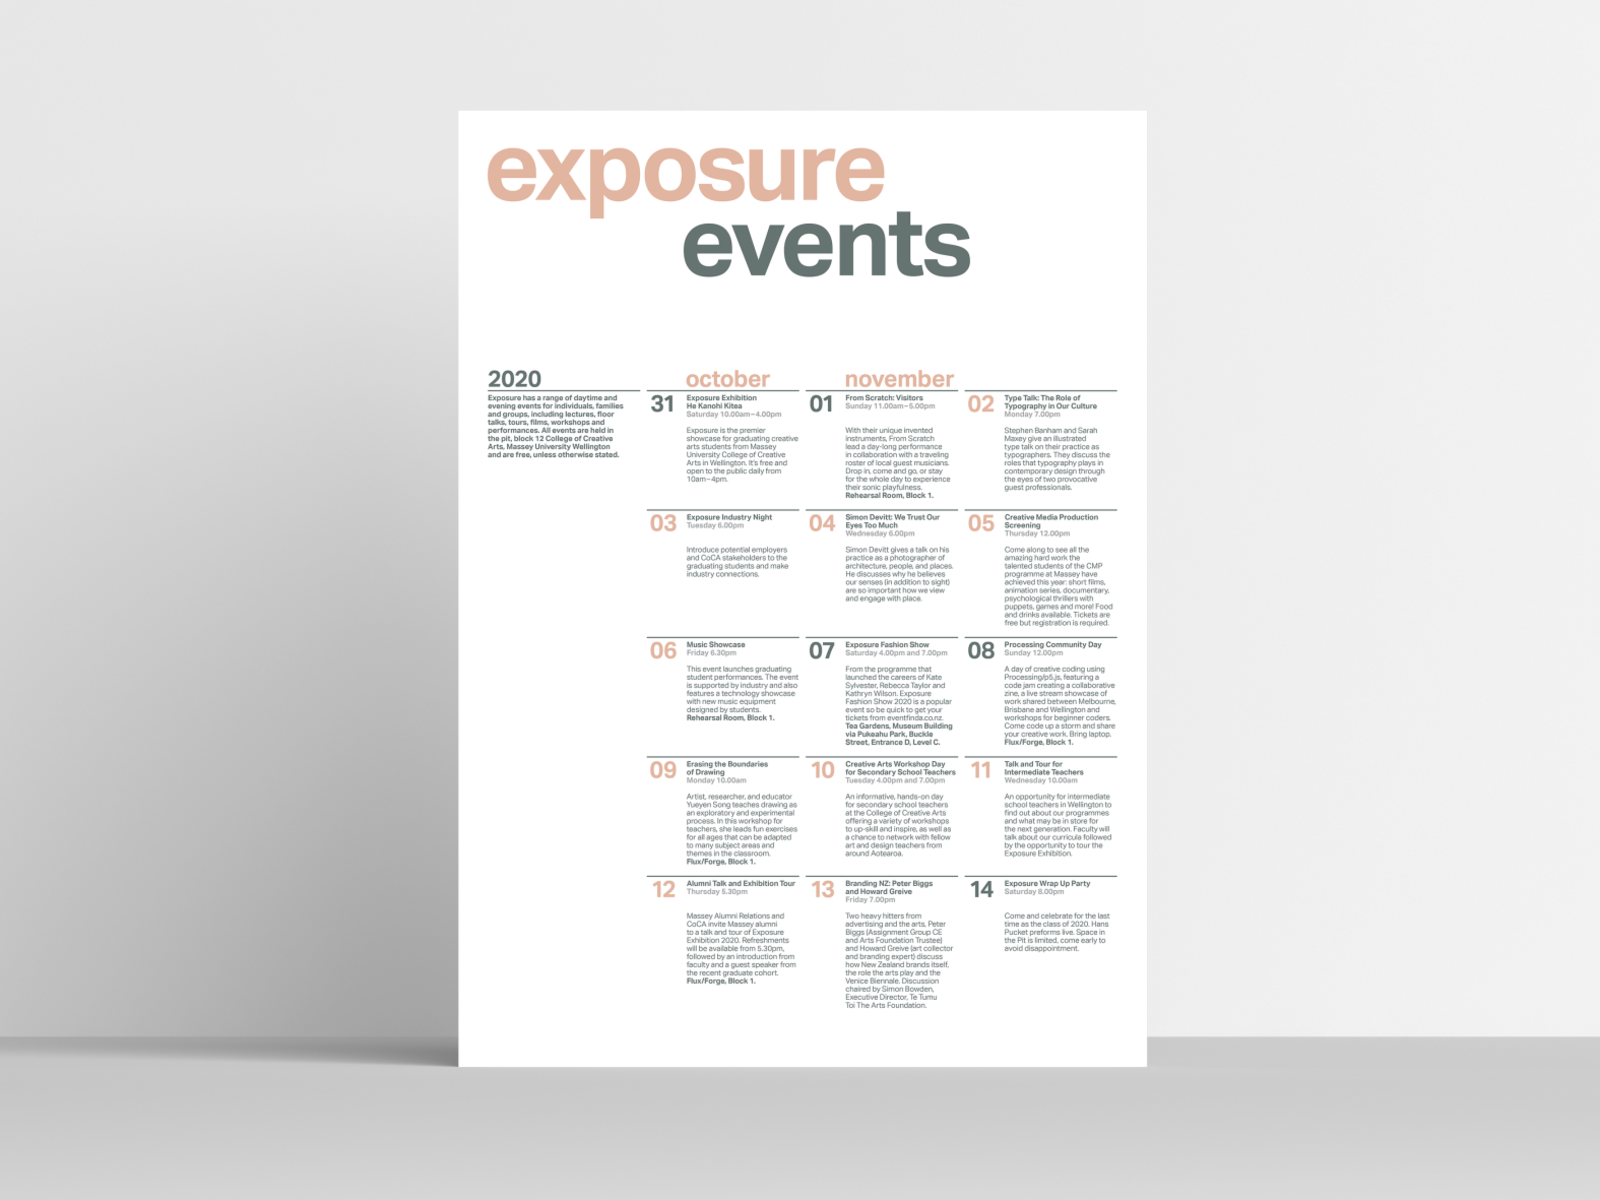 Exposure Exhibition